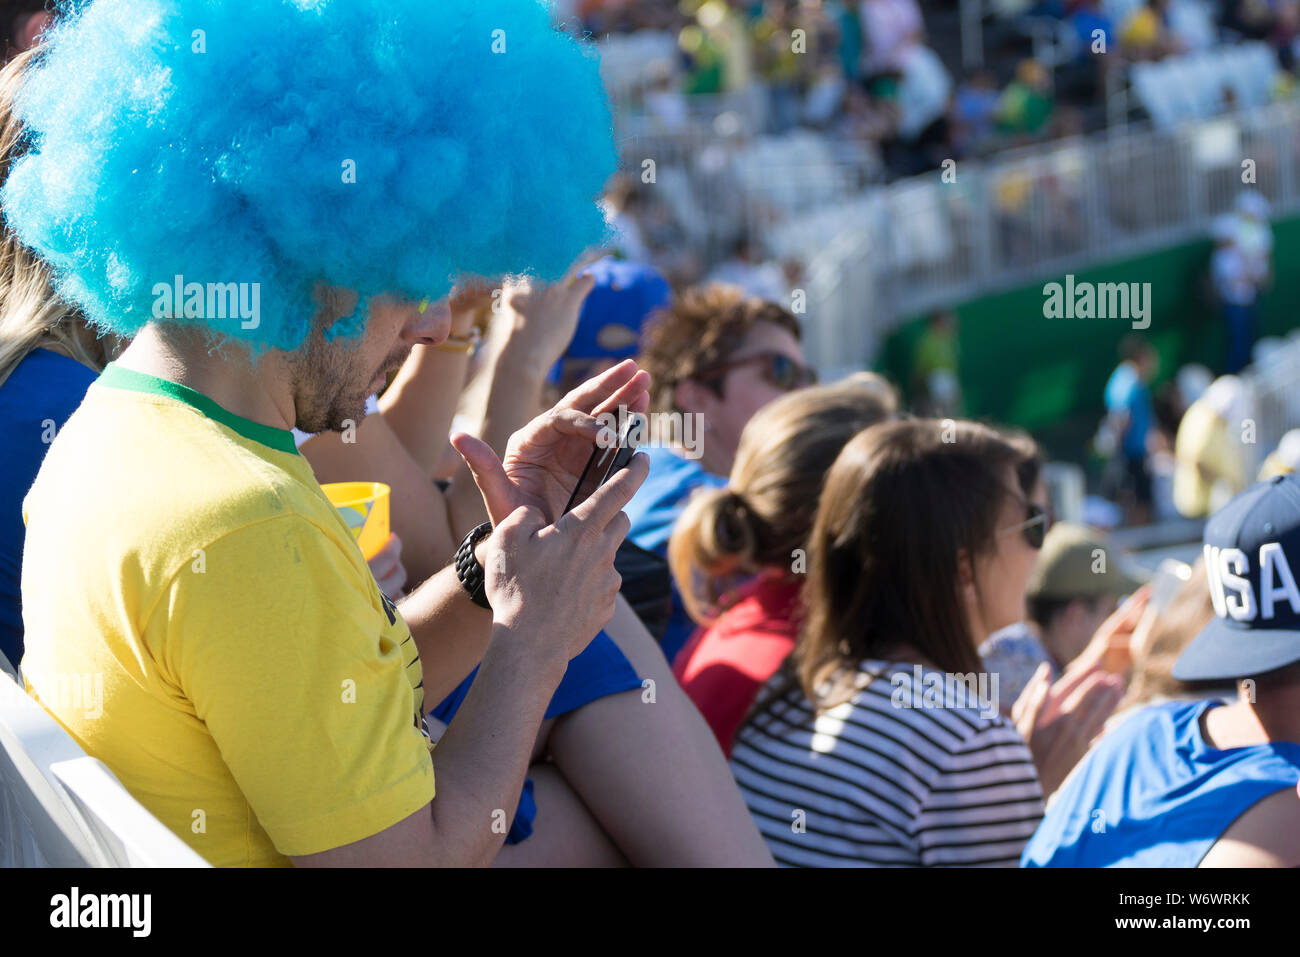 Brasilianischen Anhänger mit blauen Perücke auf, auf sein Handy statt Was ist los im Stadion mit Masse im Hintergrund Stockfoto